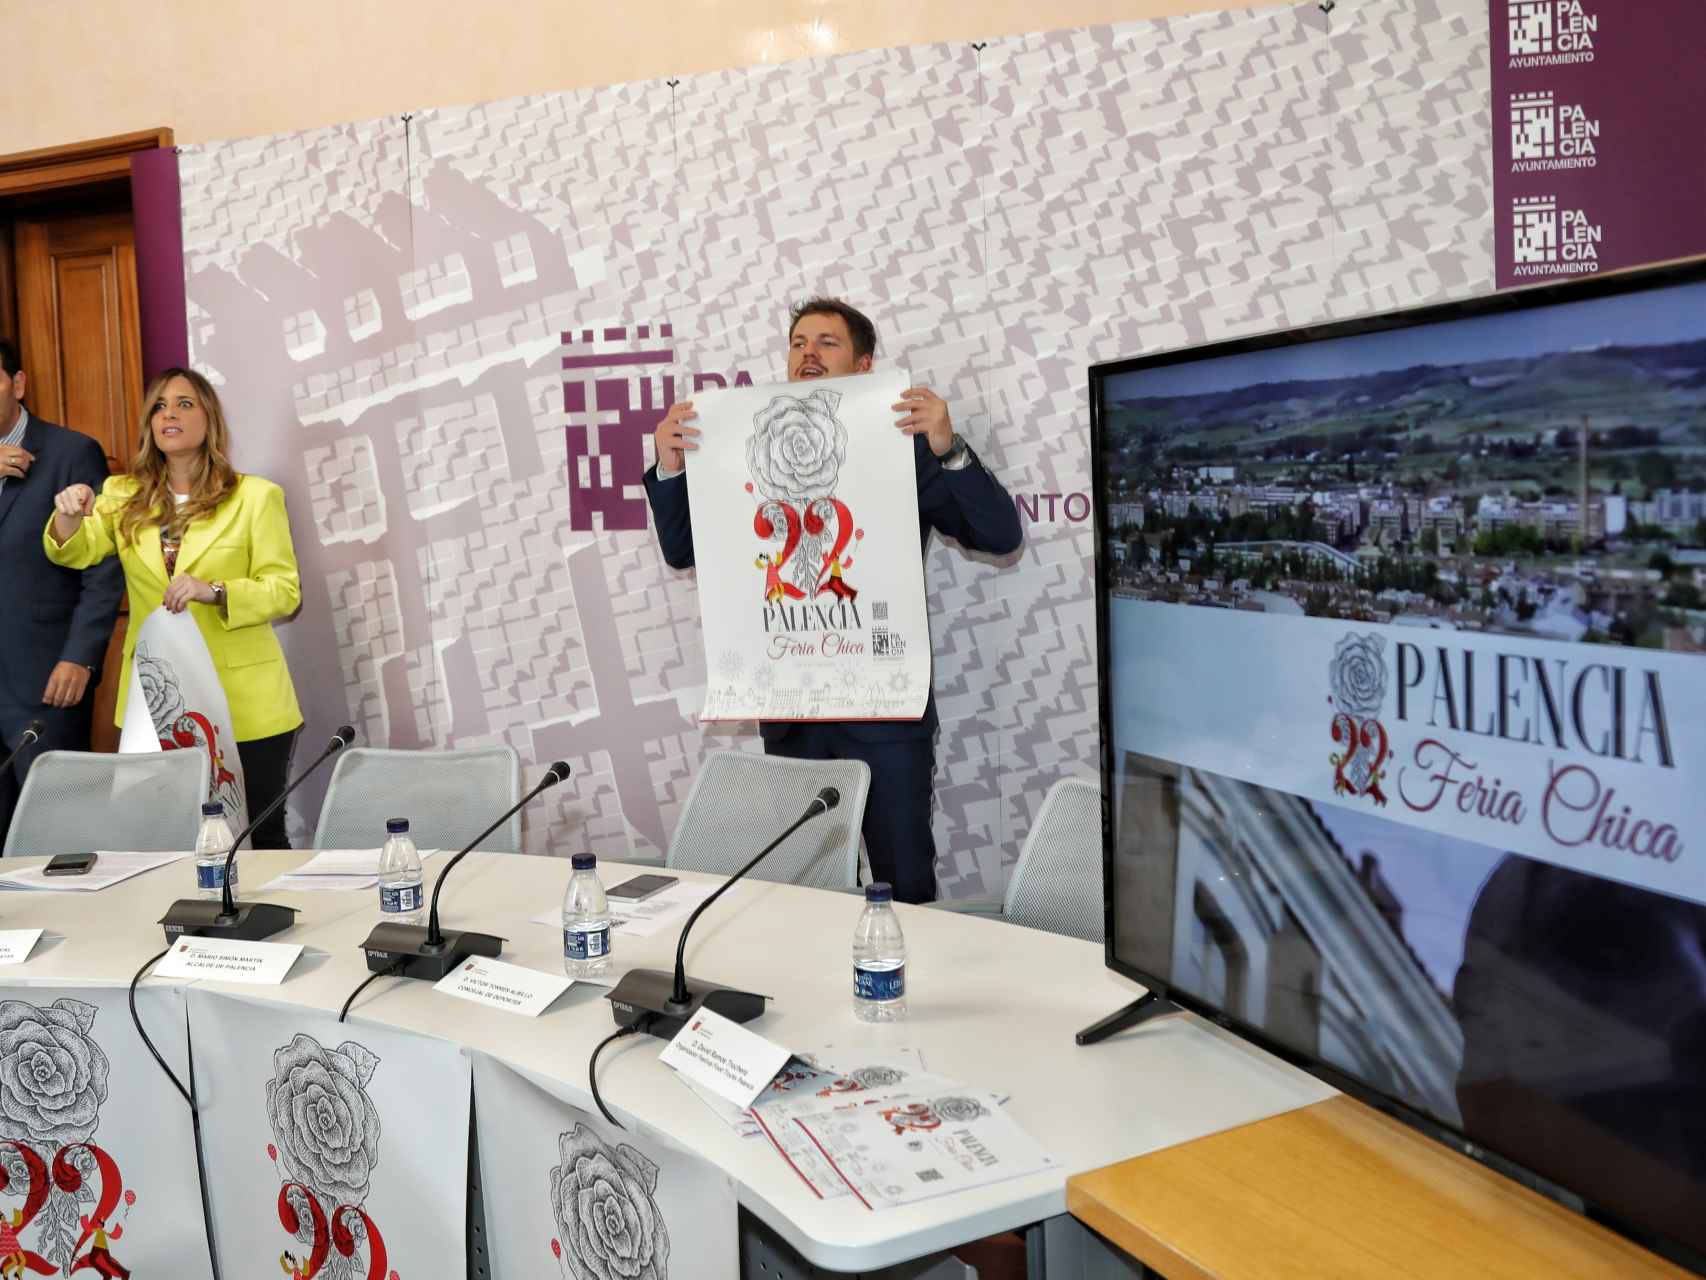 Presentación de la programación de la Feria Chica de Palencia 2022.